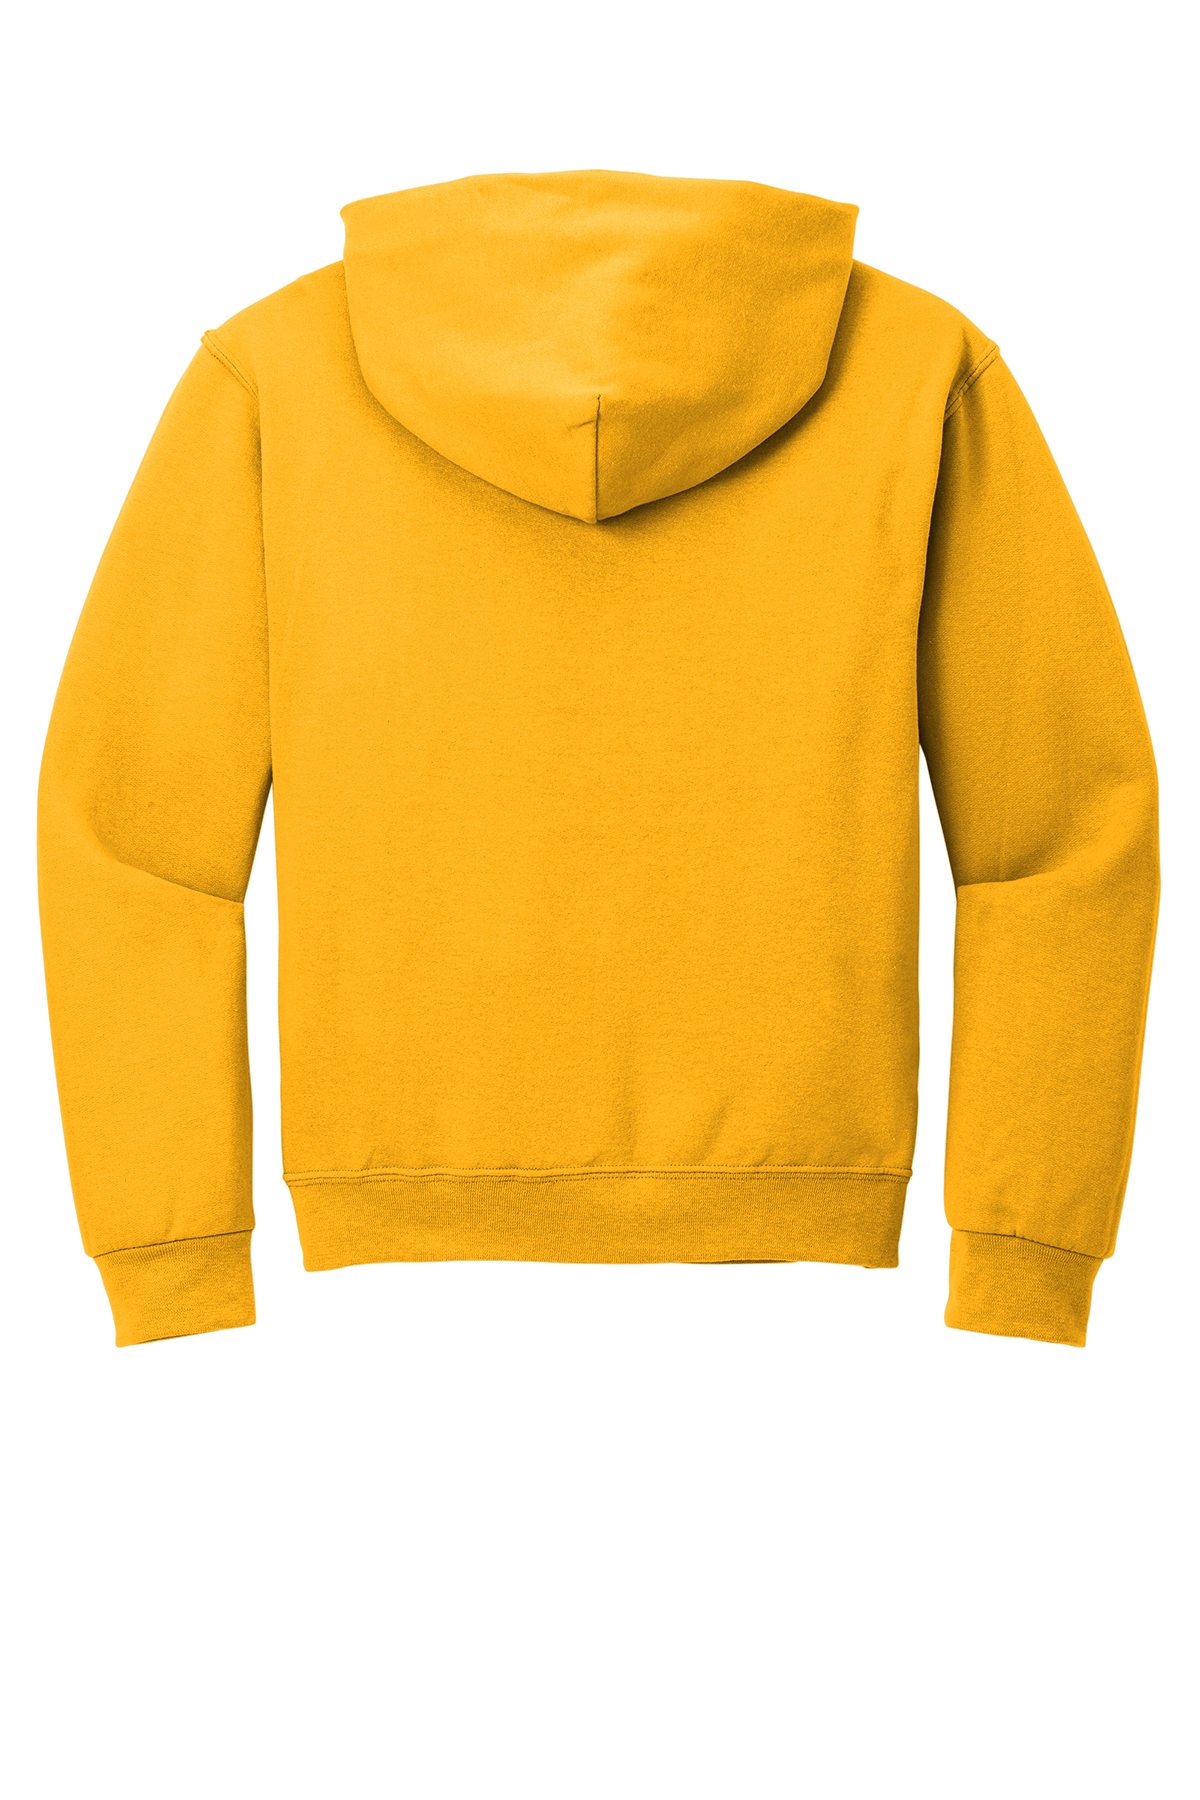 Jerzees - NuBlend Pullover Hooded Sweatshirt | Product | SanMar